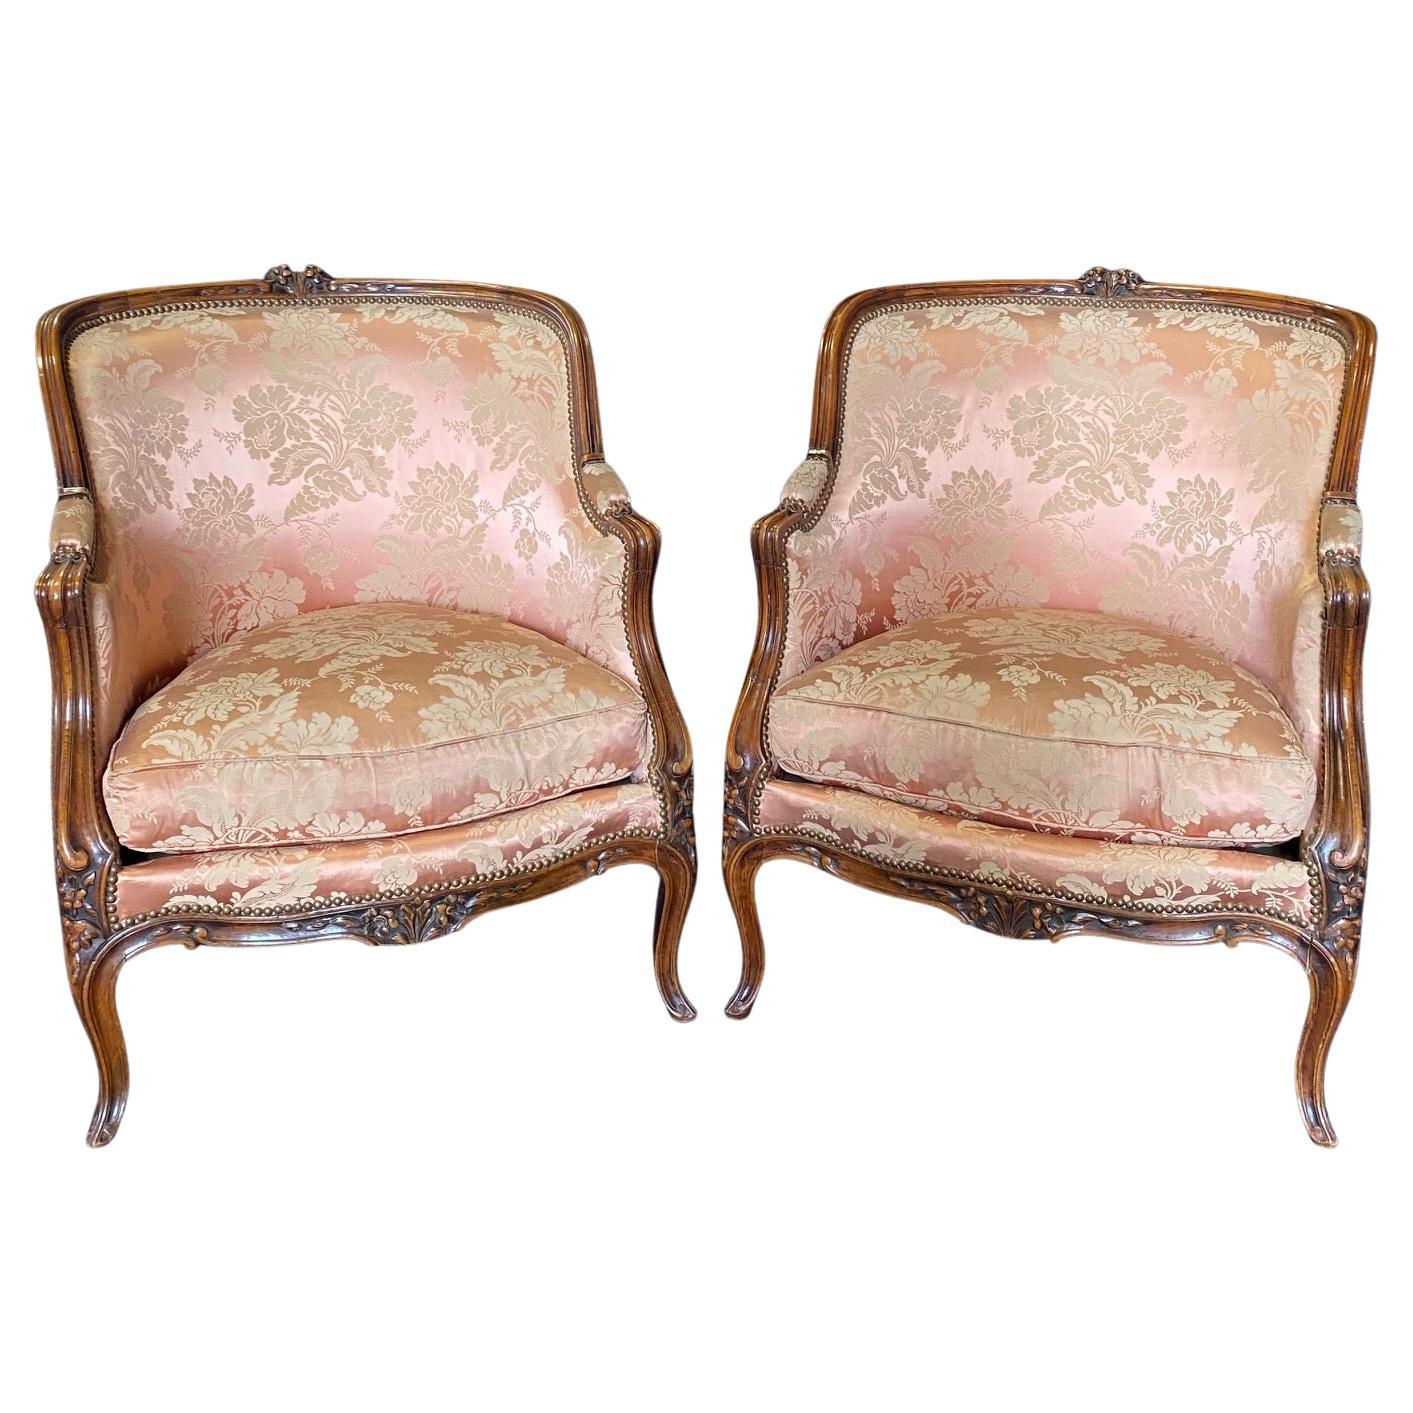 Exquisite Paar antike Louis XV geschnitzt Nussbaum Bergere Stühle oder Club Chairs 